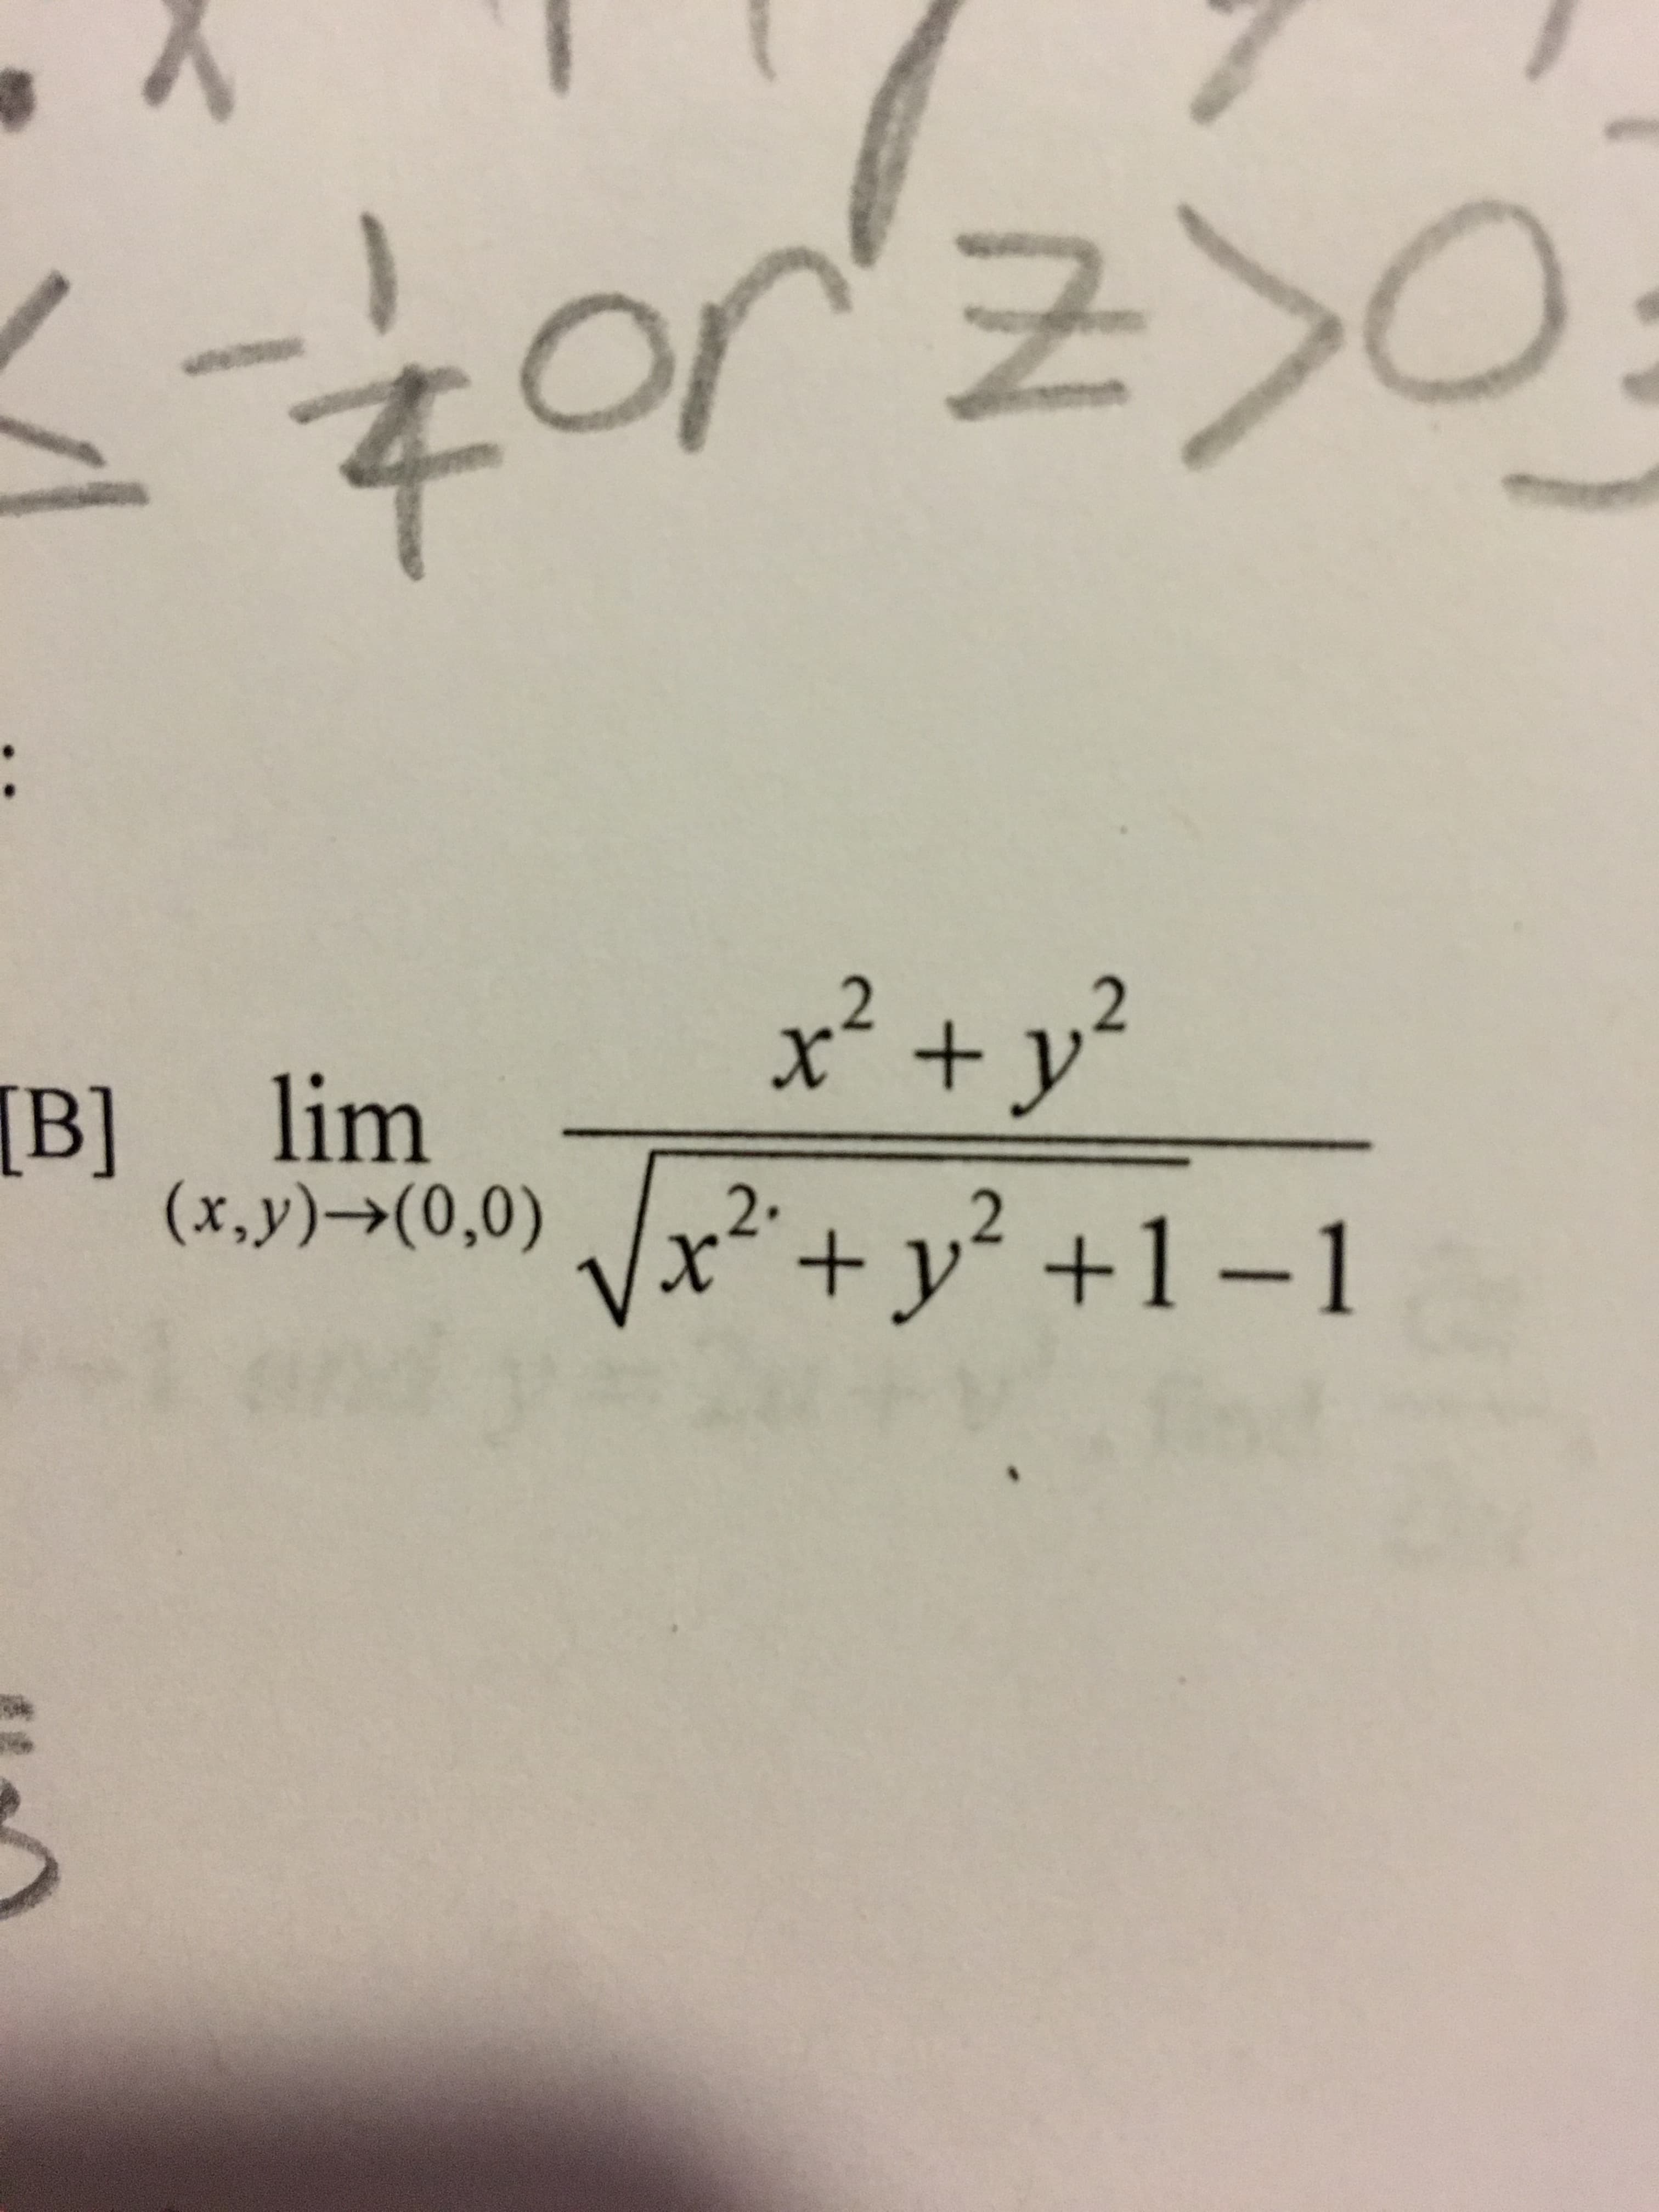 :
x2 + y
Vx
2
[B] lim
(x,y)->(0,0)
+ y +1 -1
